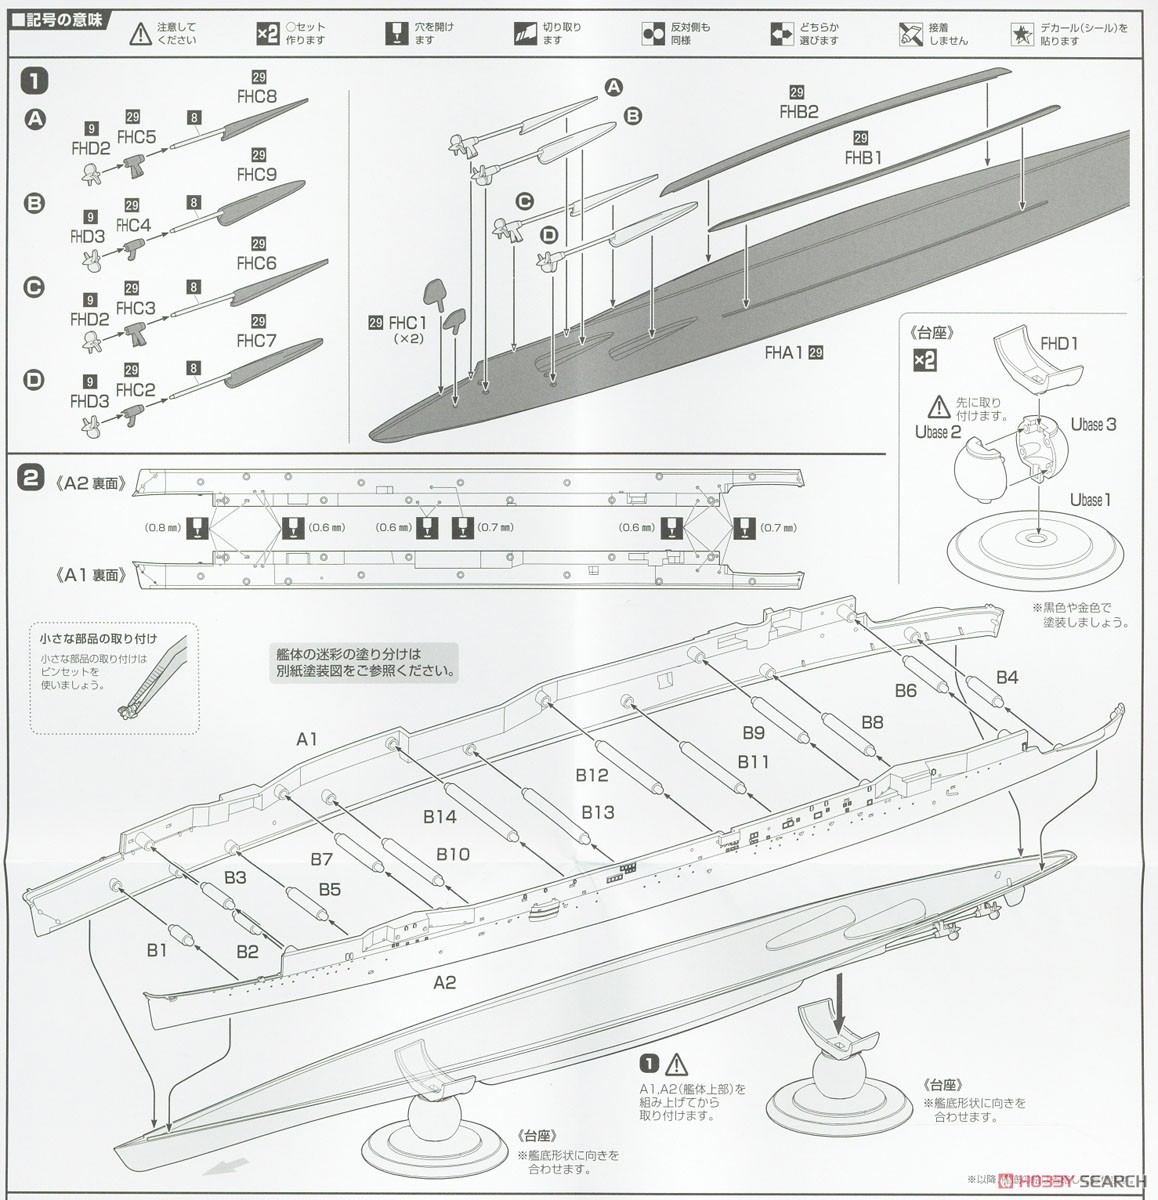 日本海軍航空母艦 天城 フルハルモデル (プラモデル) 設計図1